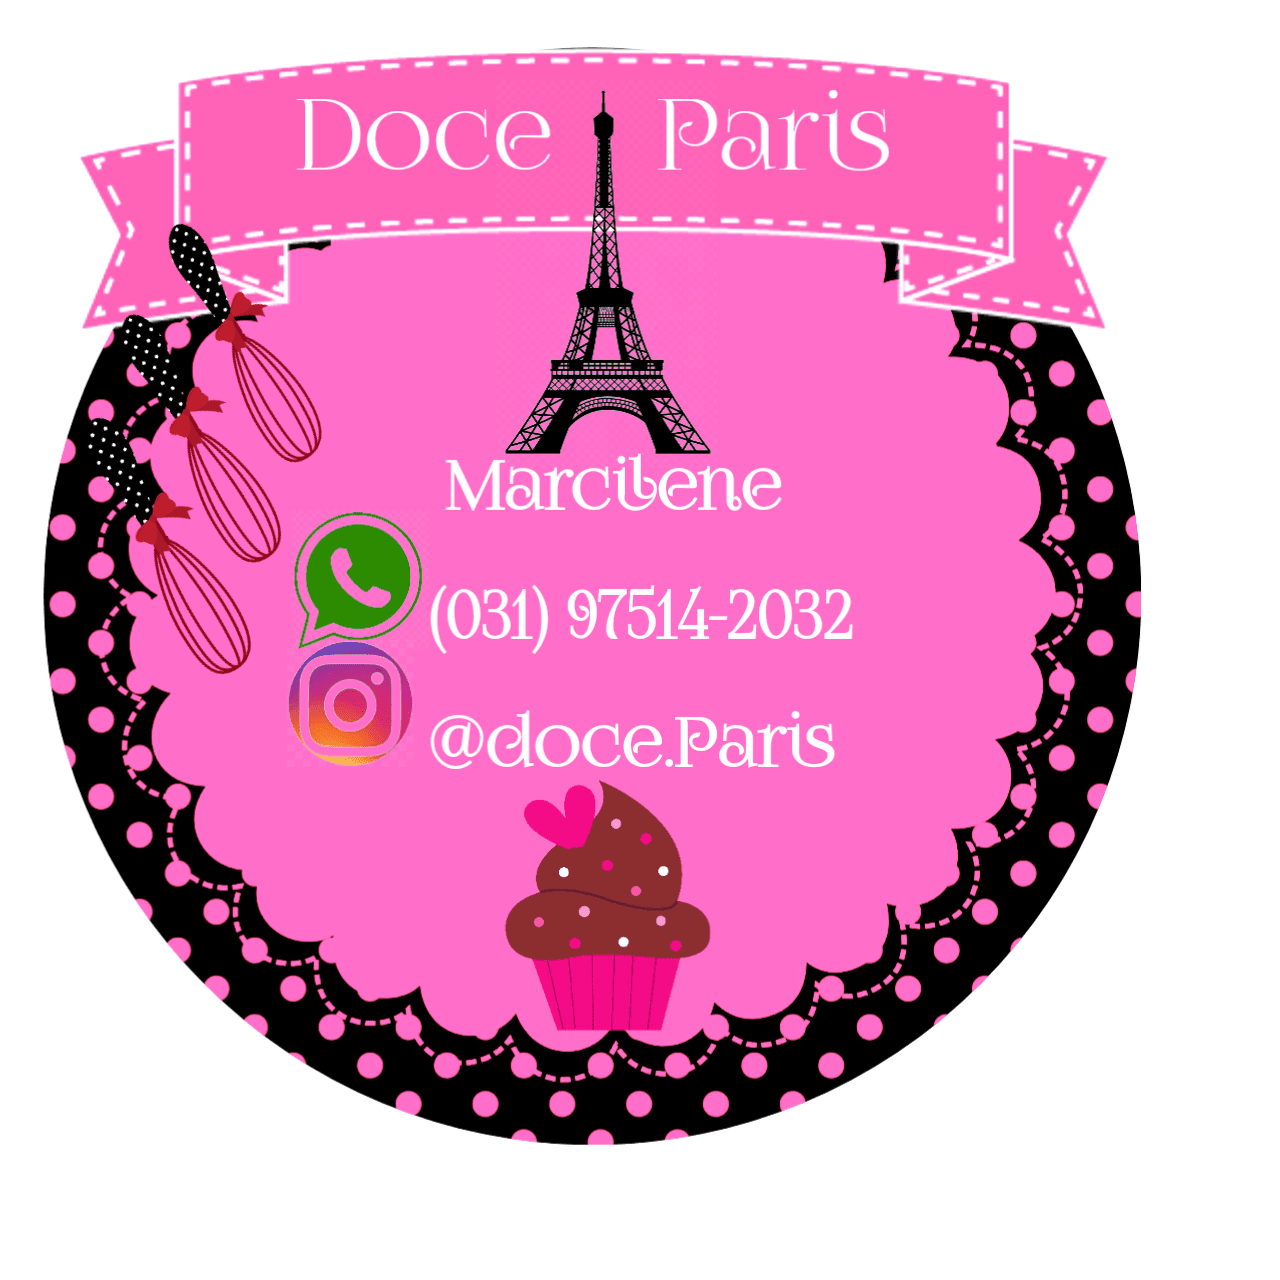 Doce Paris